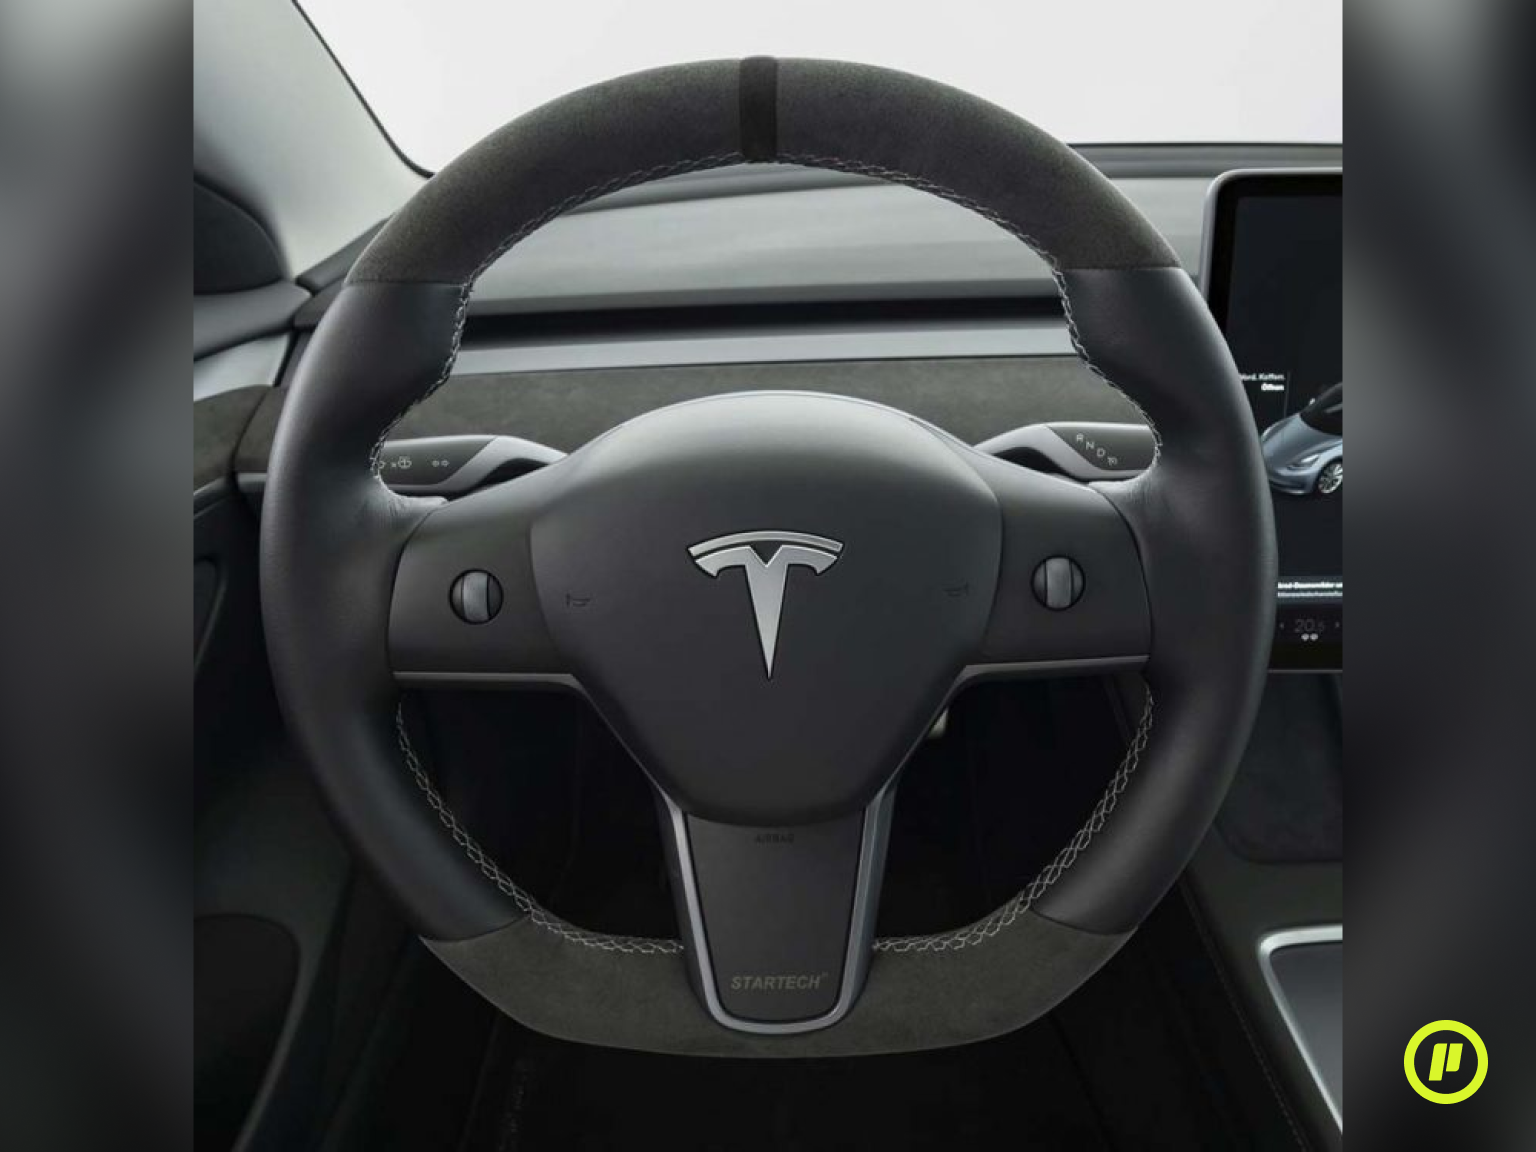 Startech Leather-Alcantara Sport Steering Wheel for Tesla Model Y (2020+)